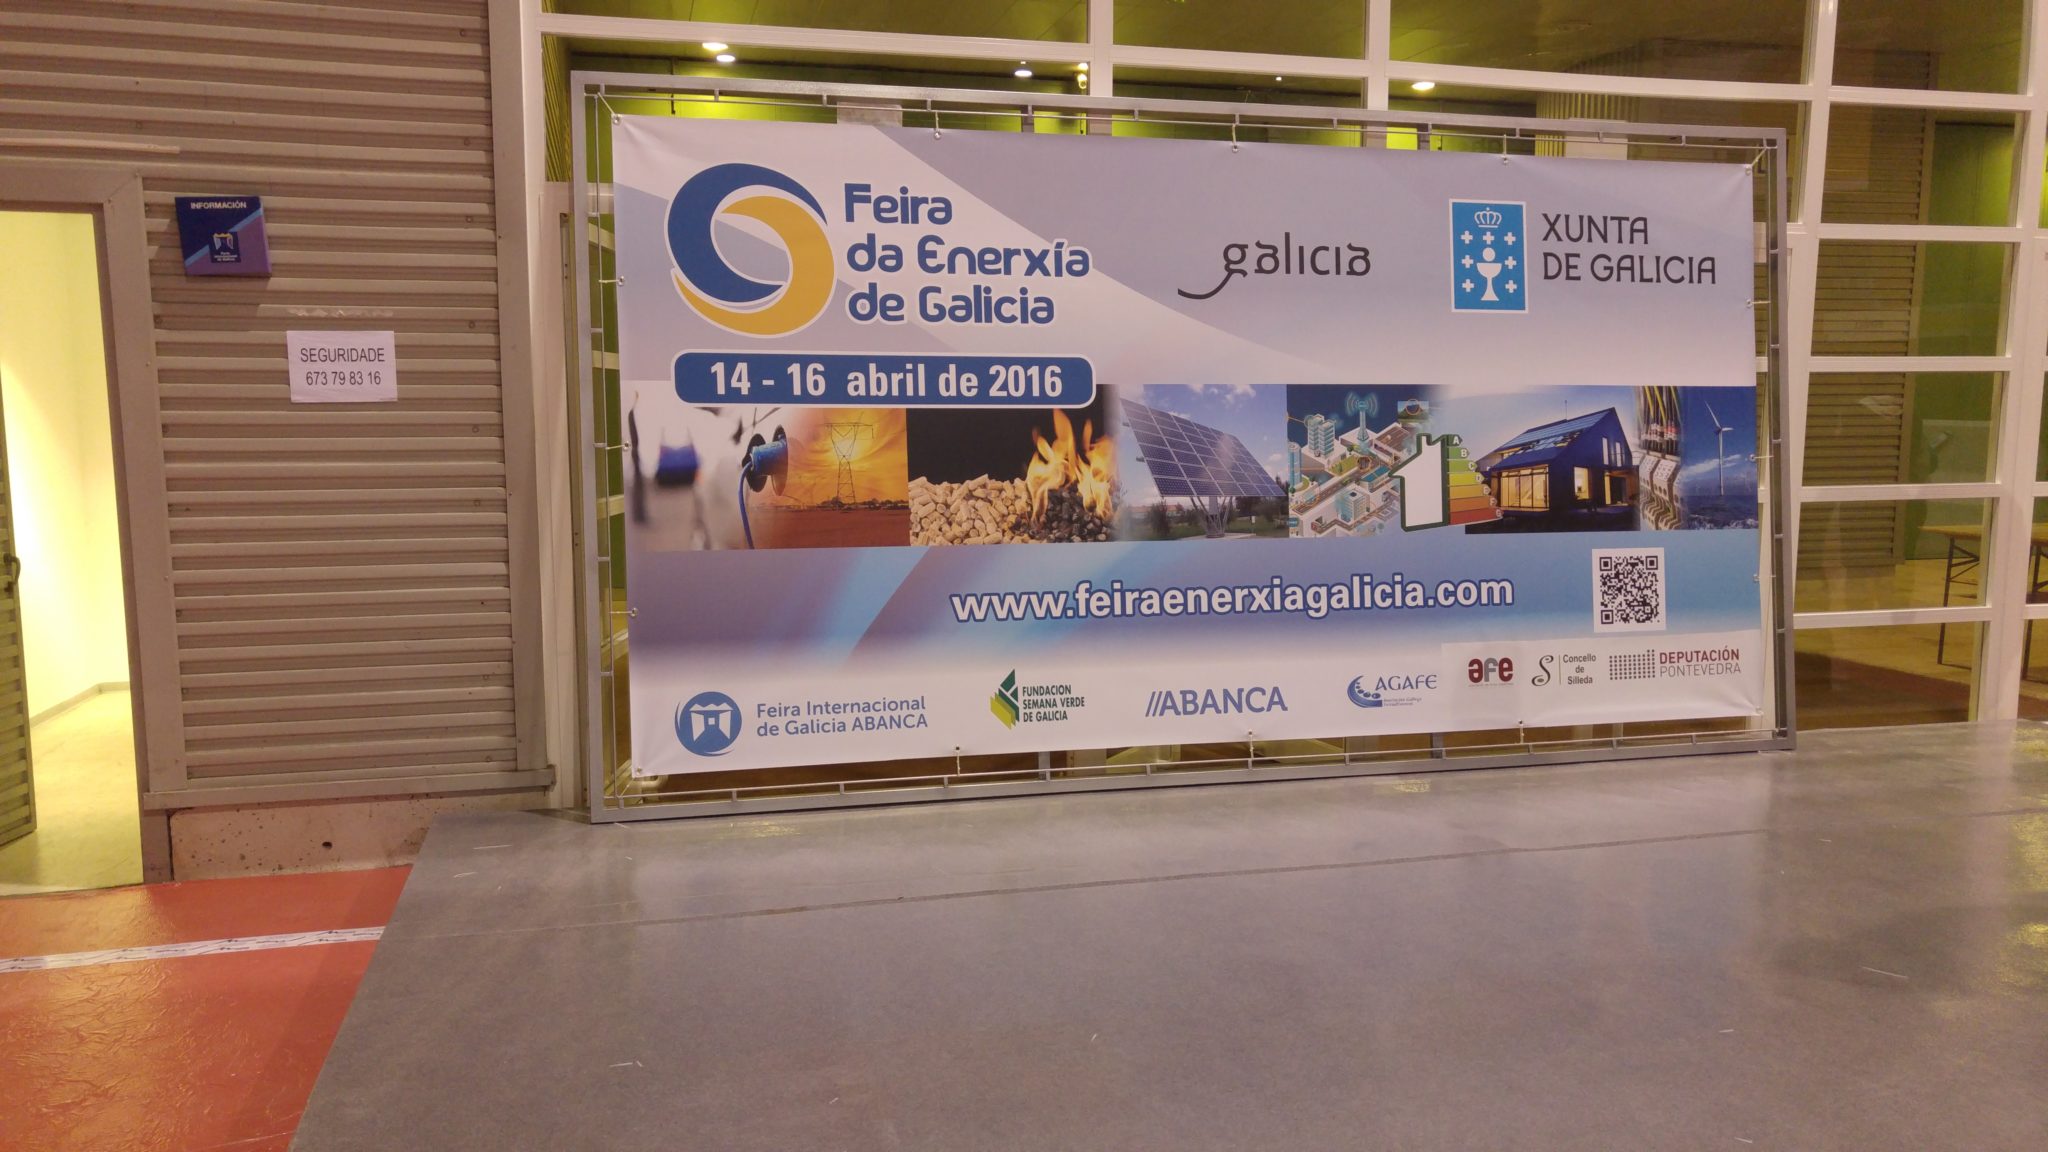 Feira da Enerxía de Galicia